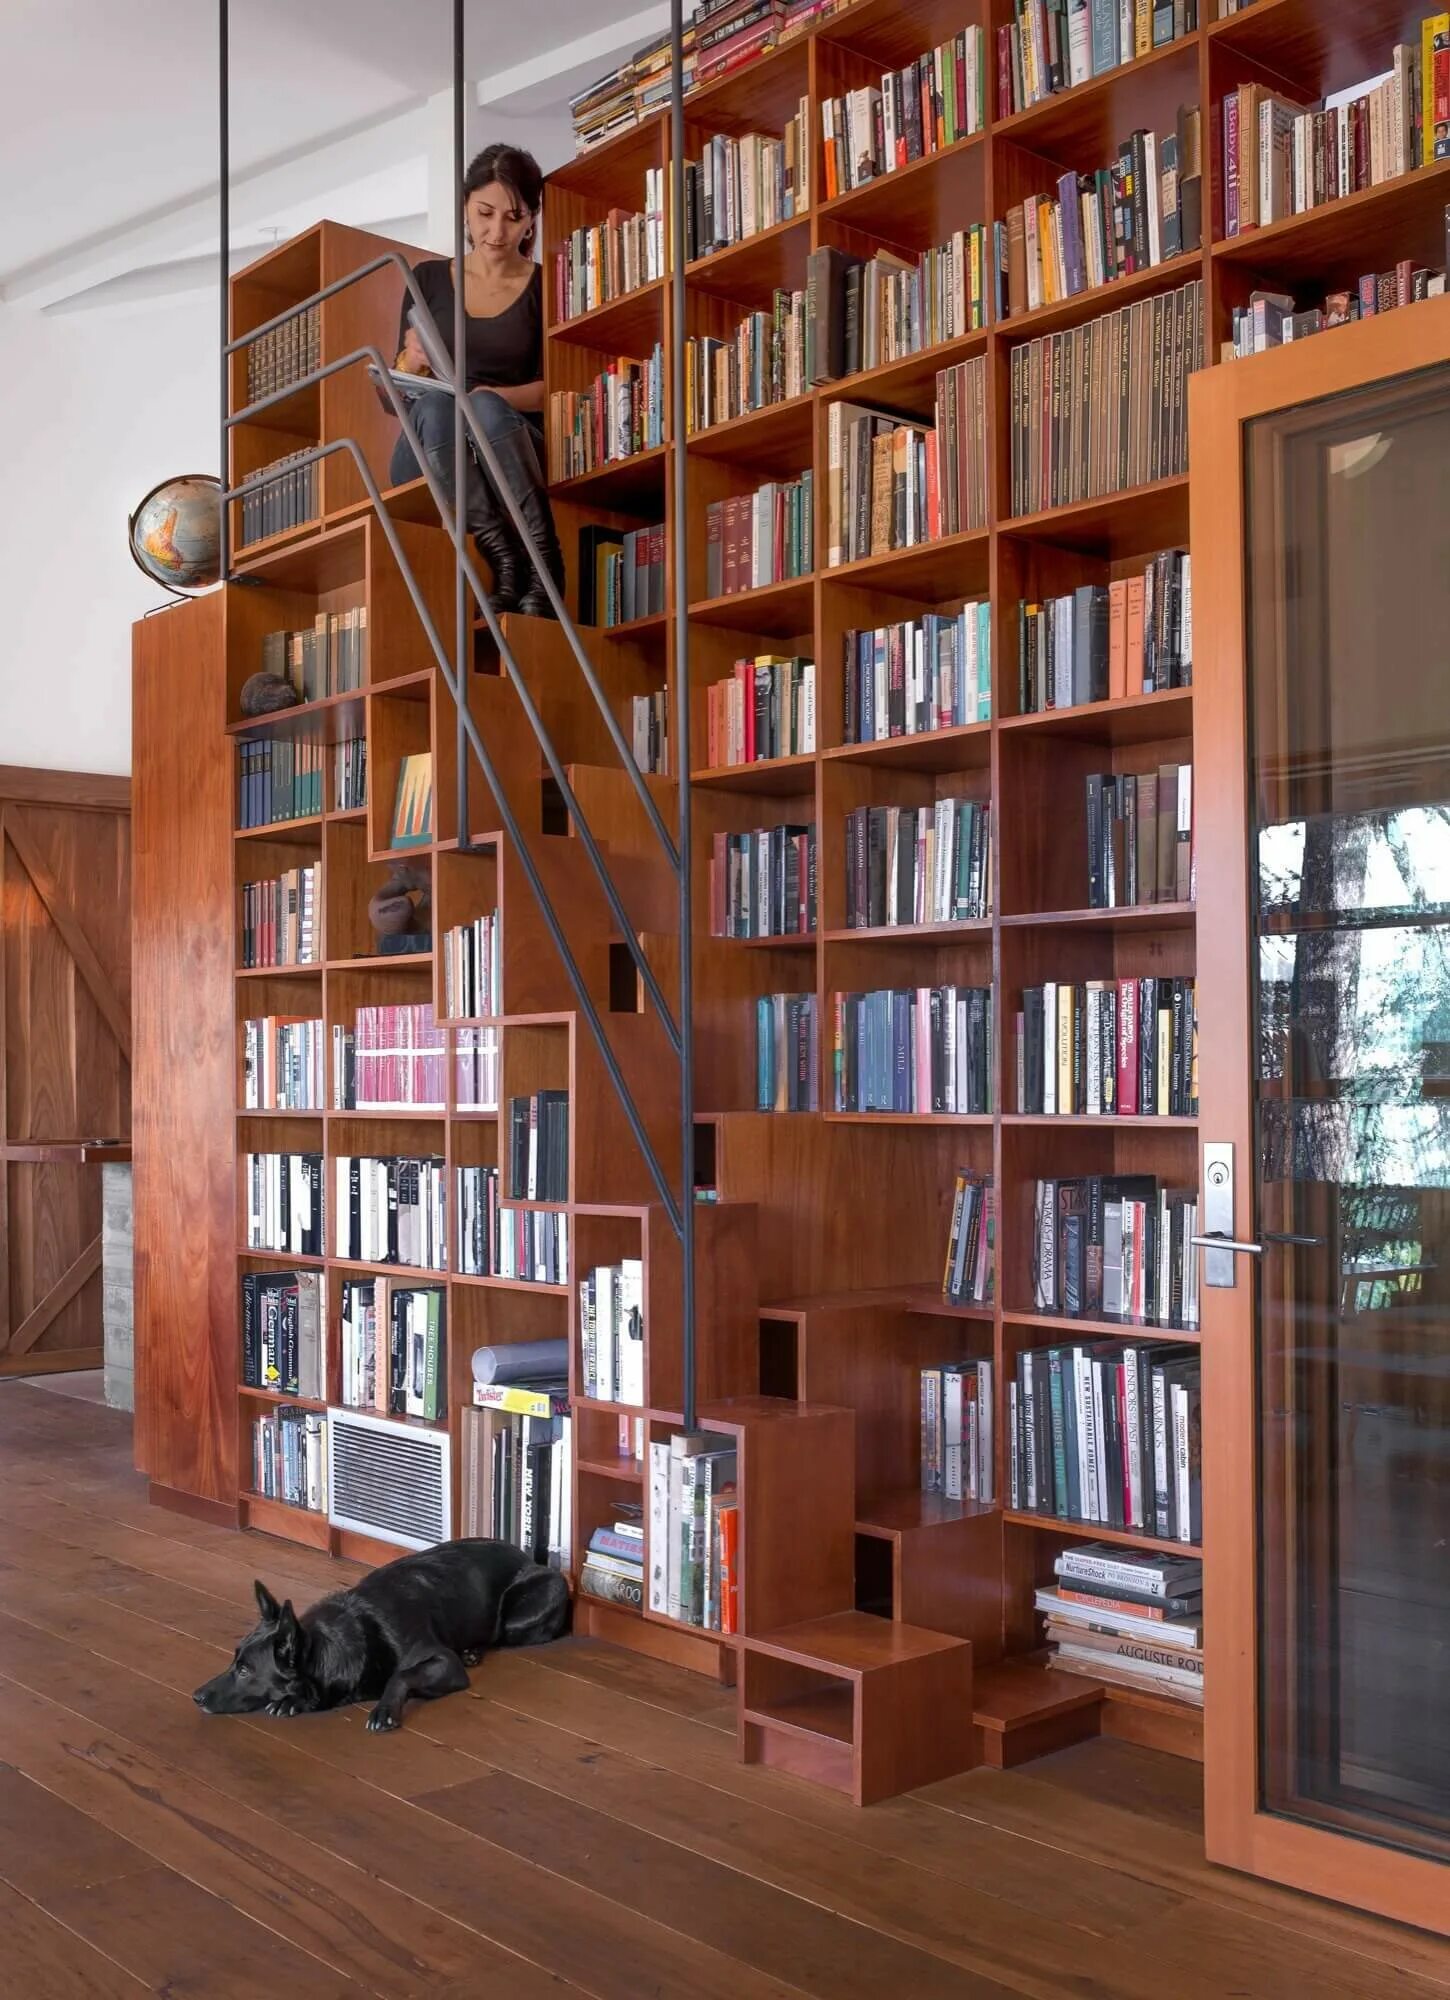 Прокат книг. Стеллаж книжный. Лестница для библиотеки. Комната с книжными полками. Стеллаж библиотечный.